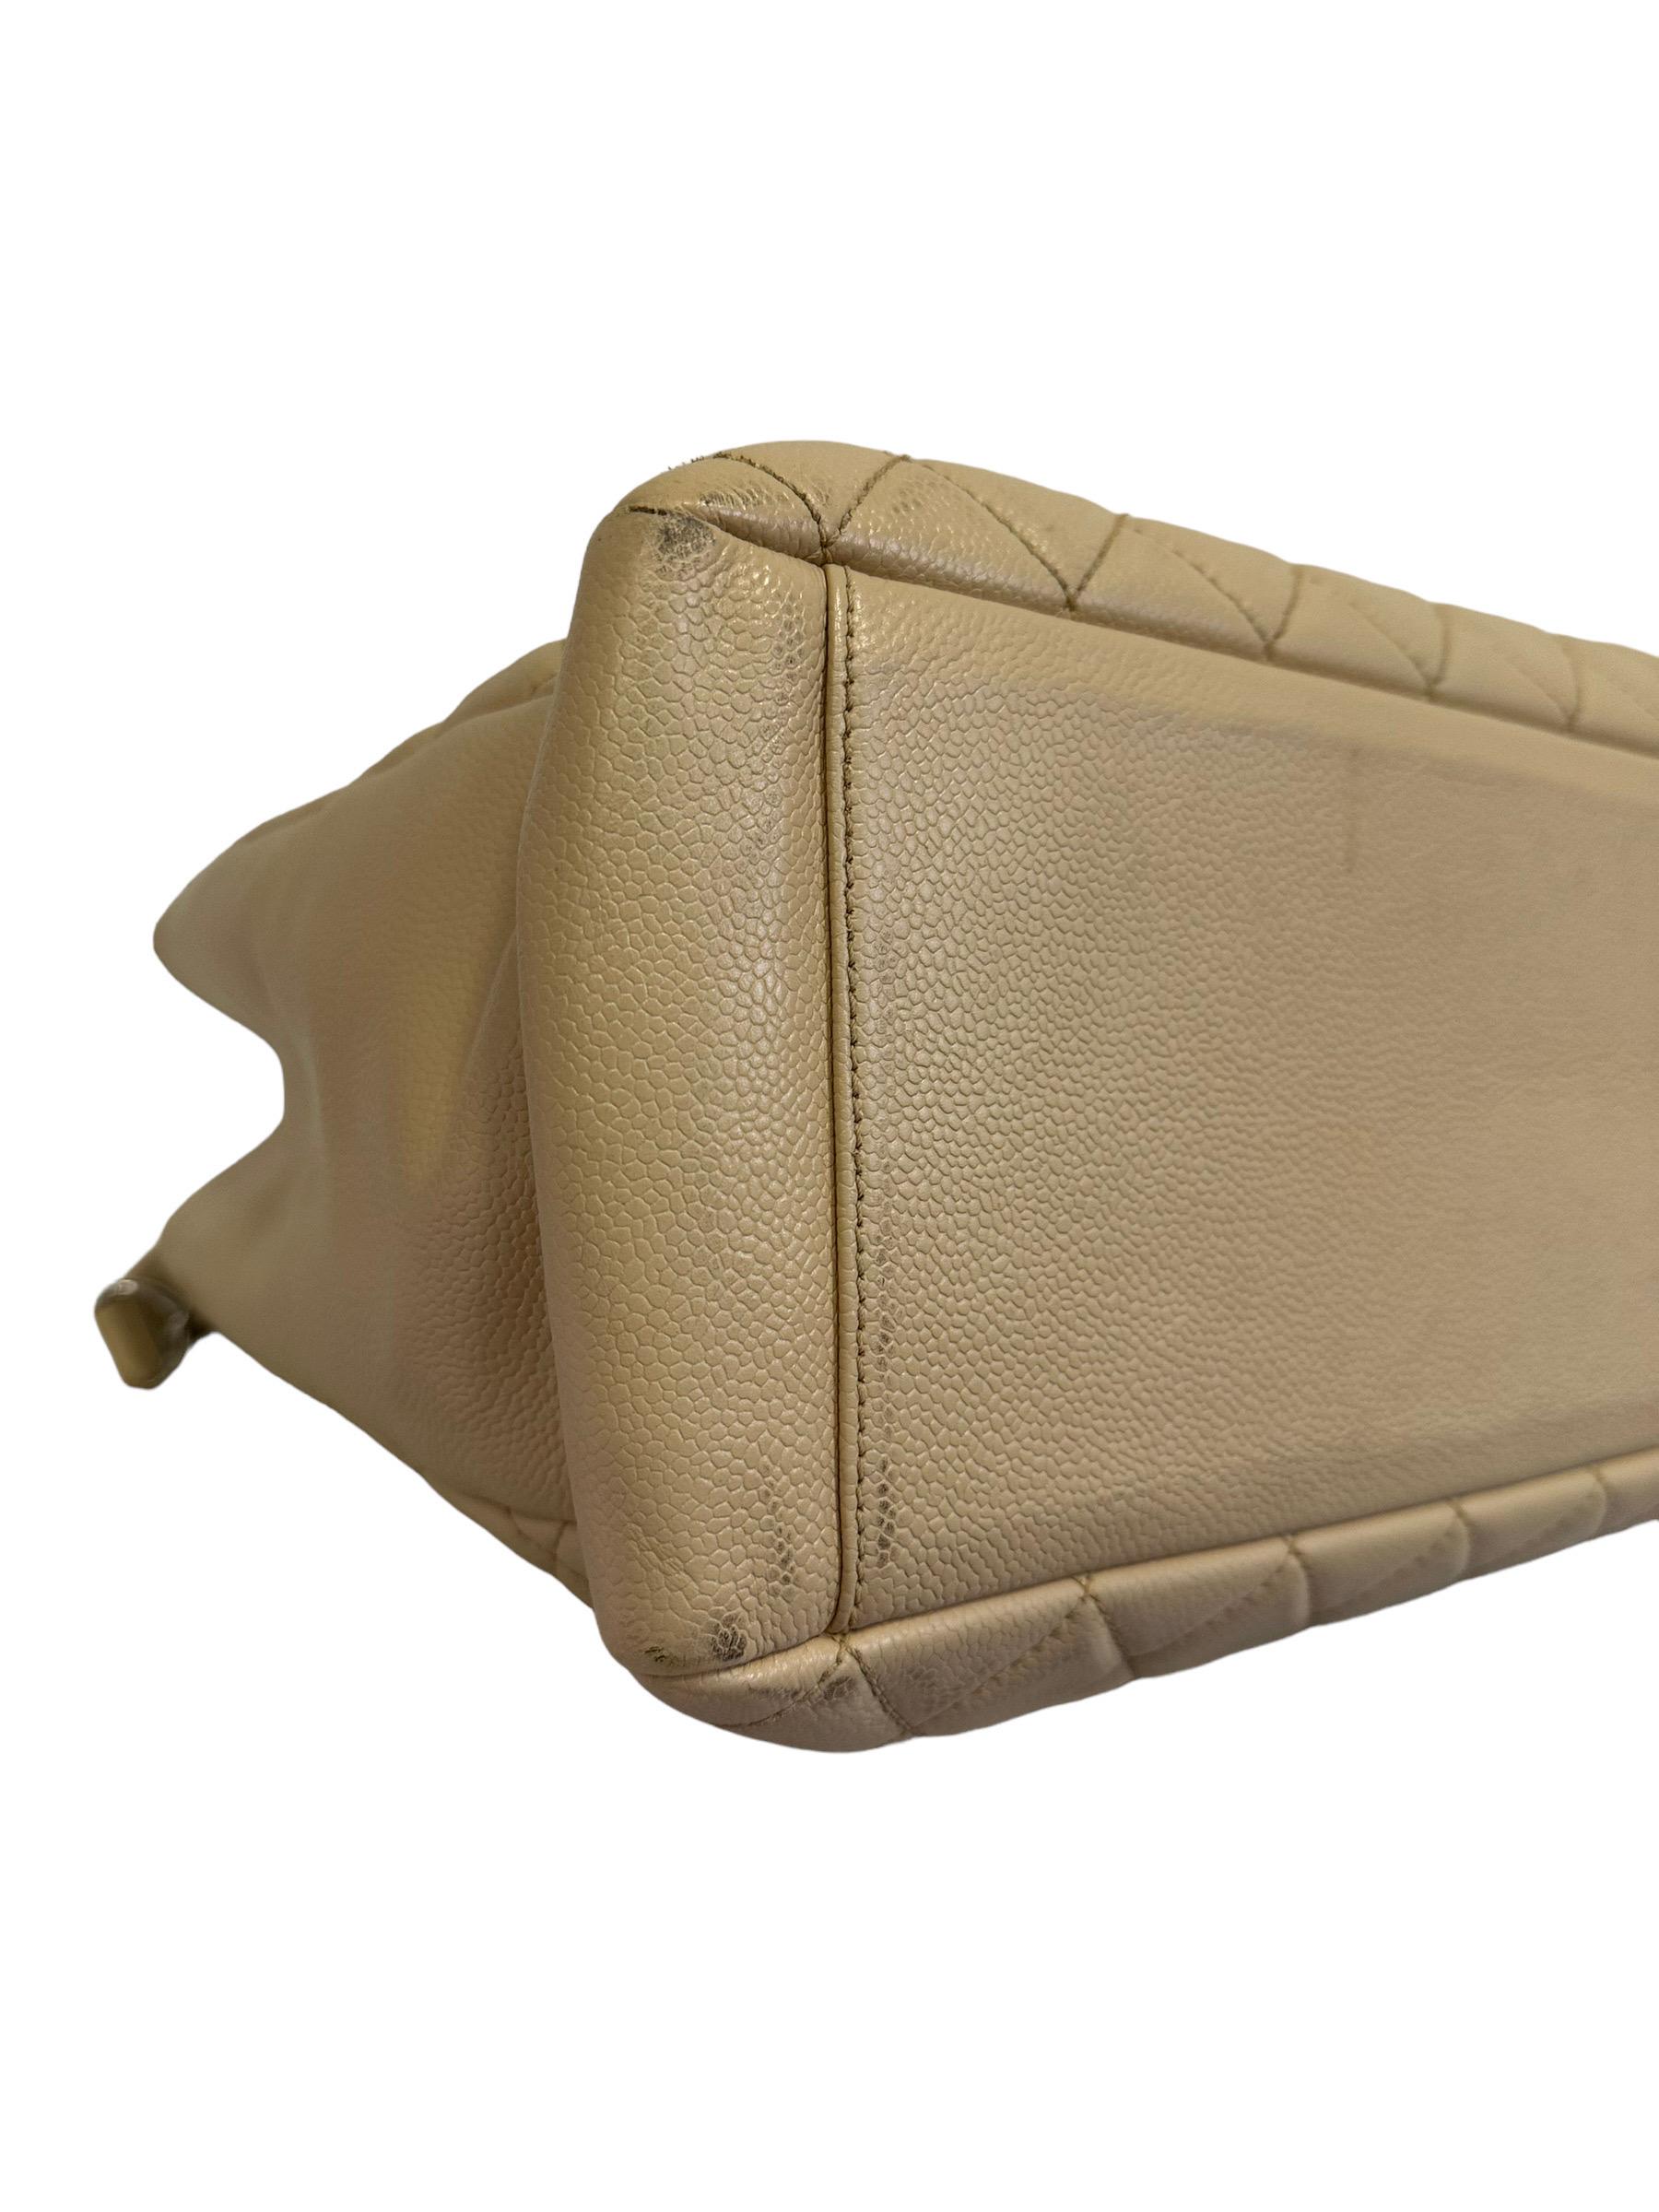 2014 Chanel Beige Leather GST Shoulder Bag For Sale 7